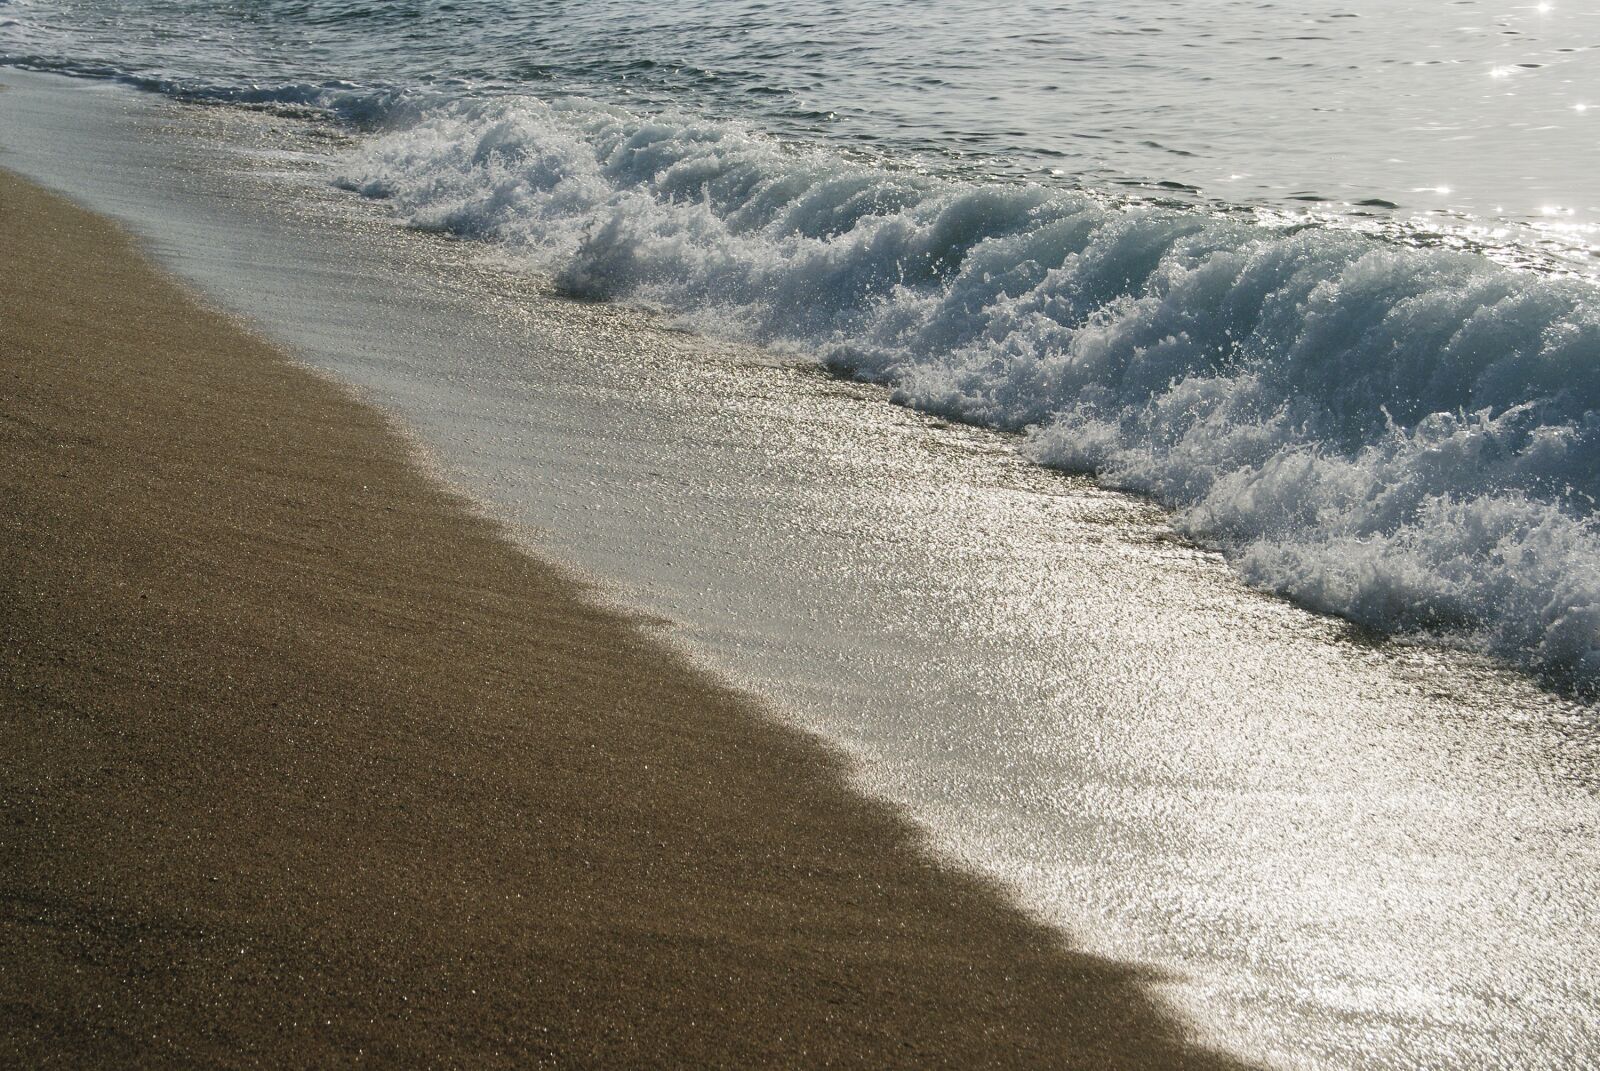 Sony Alpha DSLR-A230 sample photo. Beach, sand, waves photography